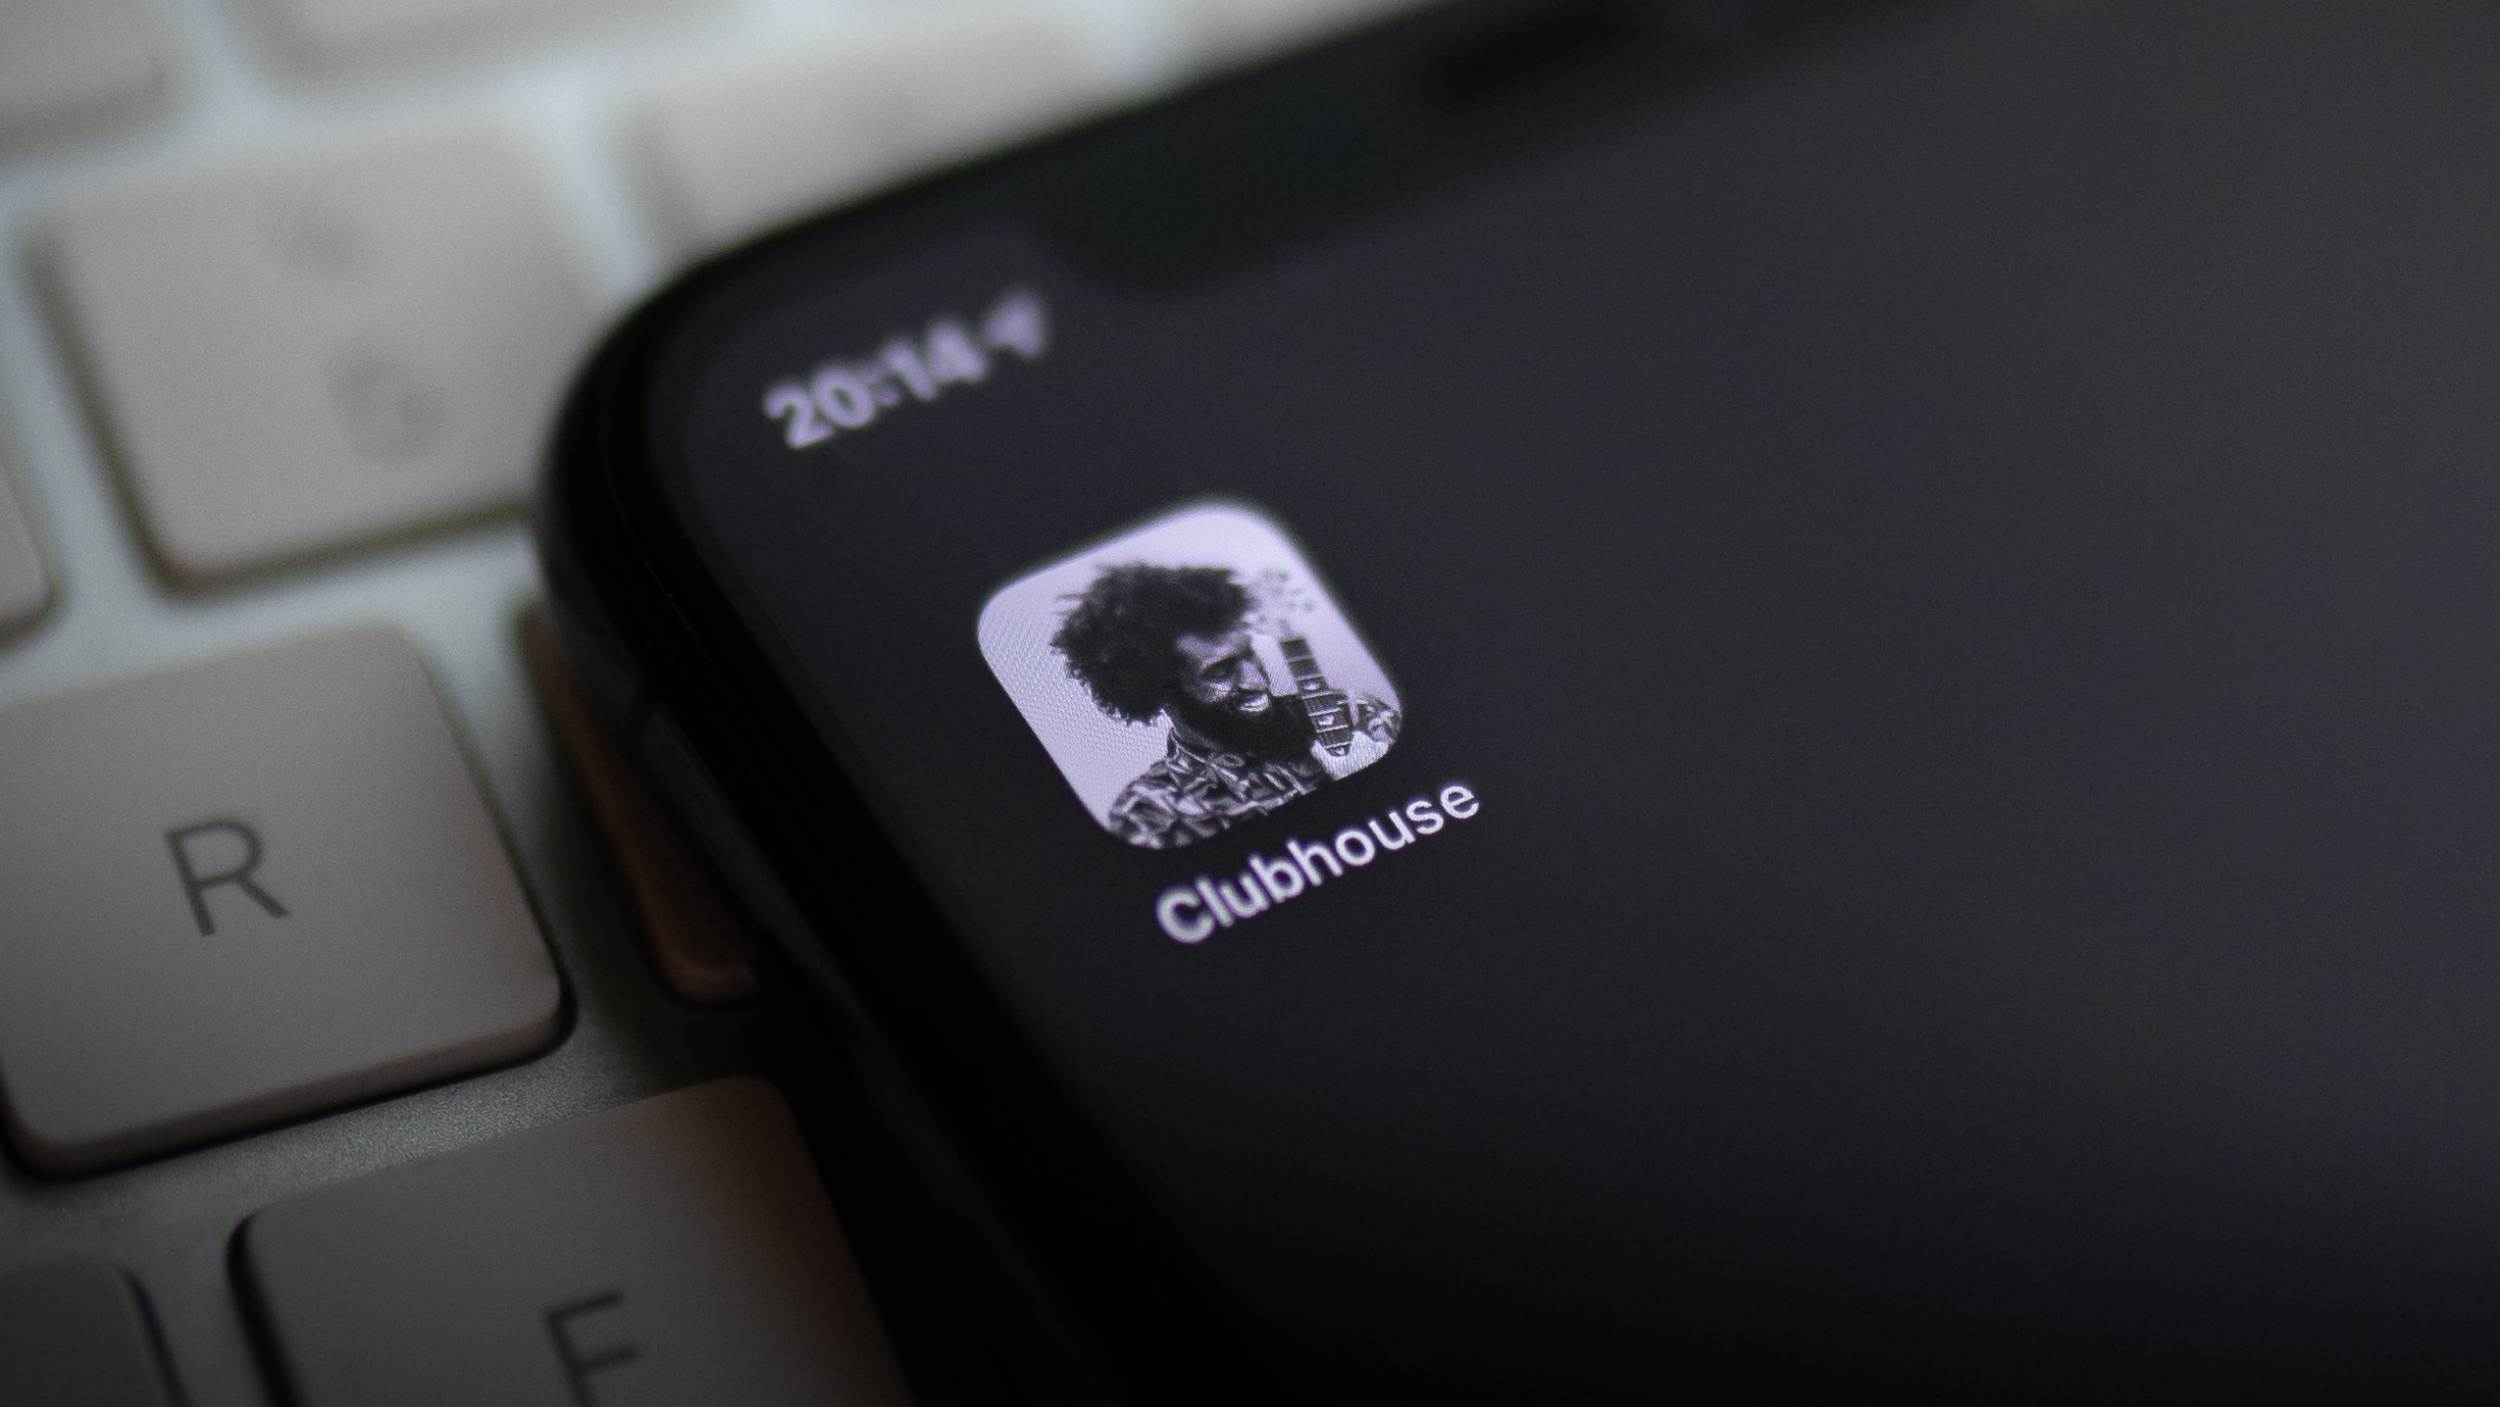 Clubhouse Kini Menjadi Aplikasi Popular Di Malaysia